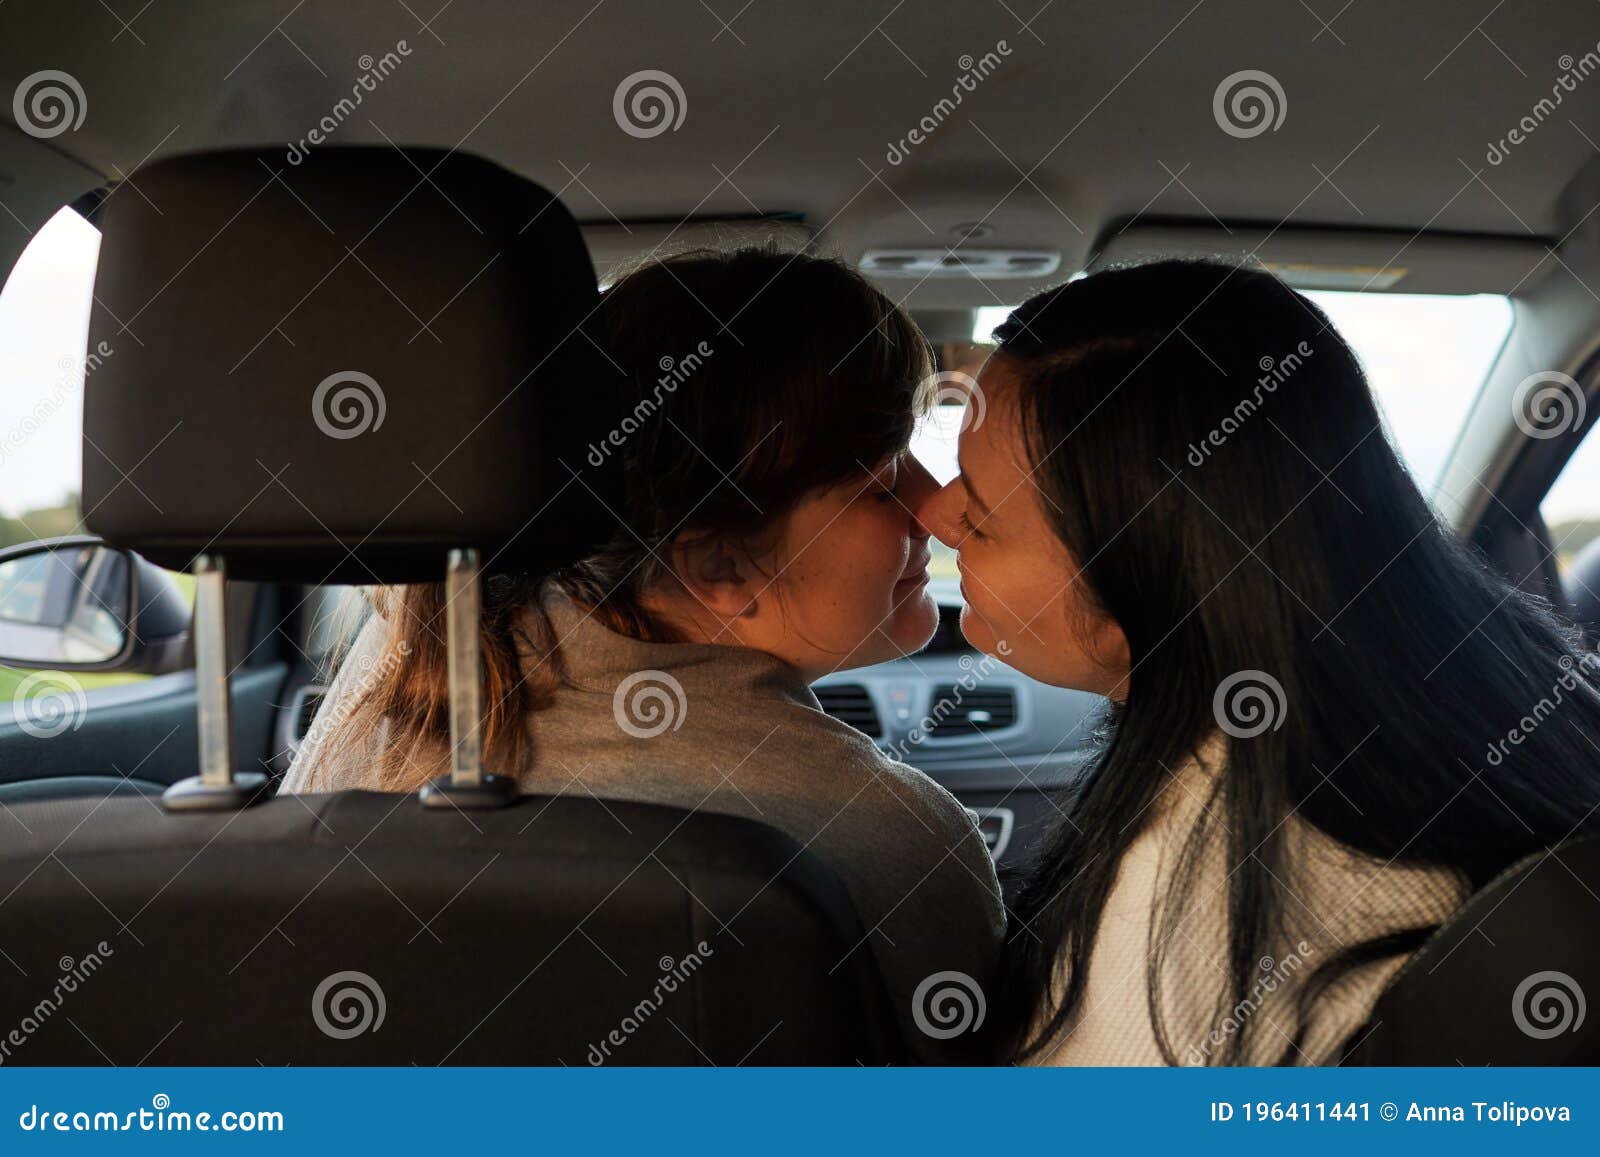 считается ли изменой когда девушка с девушкой целуются фото 39